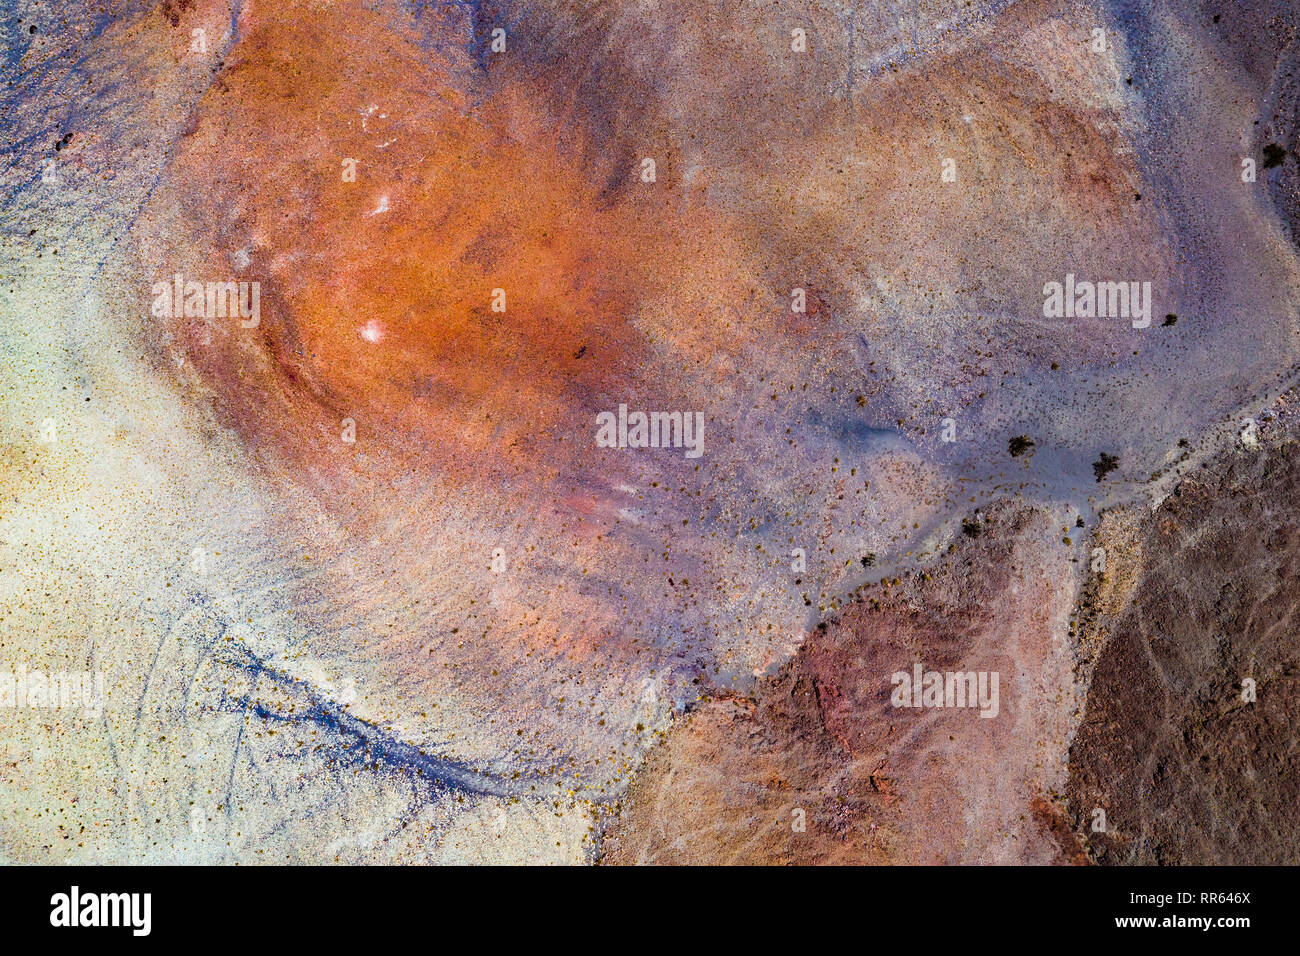 abstrakte Luftaufnahme der mineralienhaltigen Erdoberflaeche der Atacama Wueste. Stock Photo